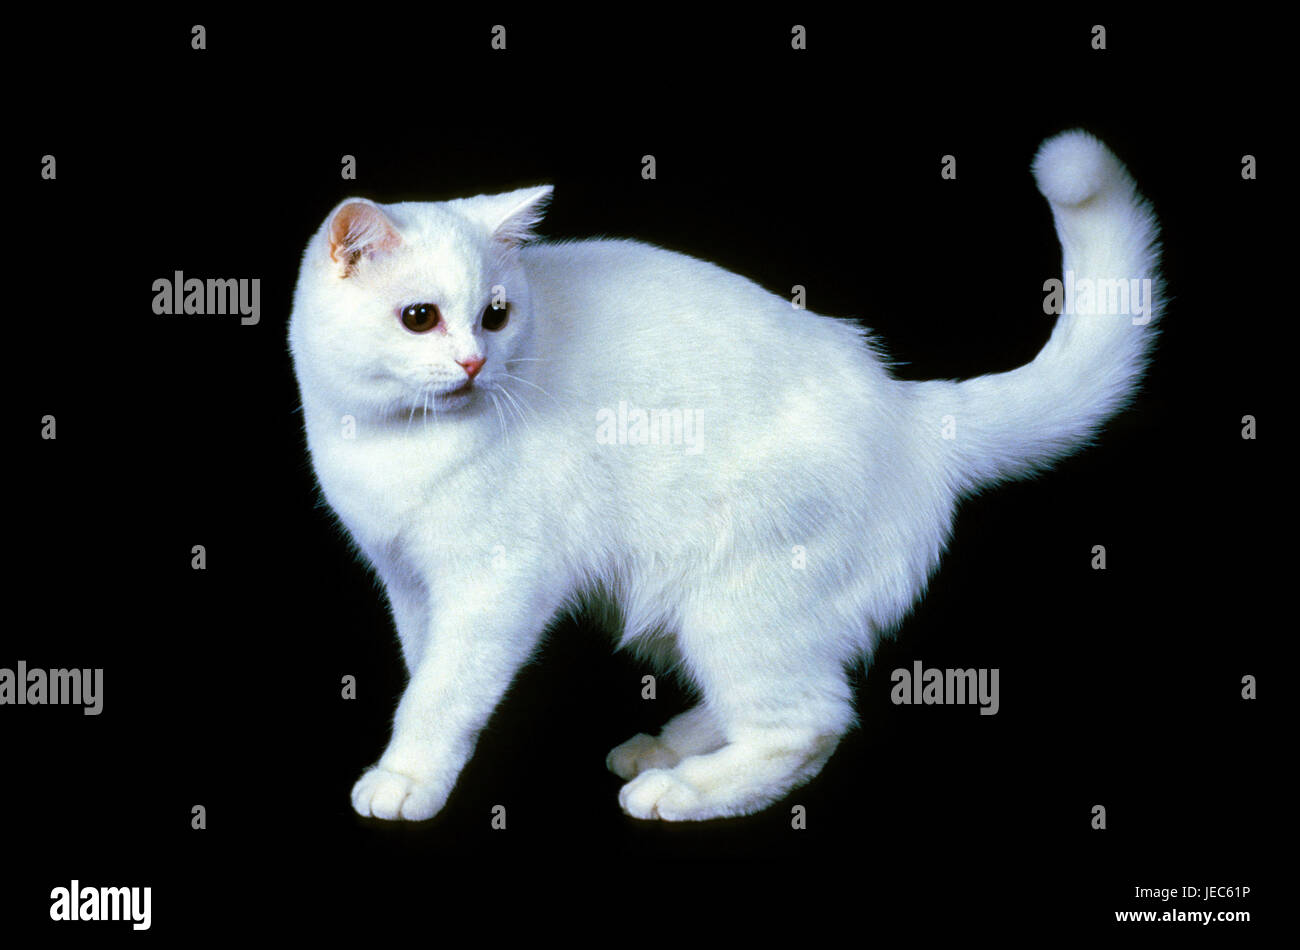 white cat 'In British short hair', studio, Stock Photo